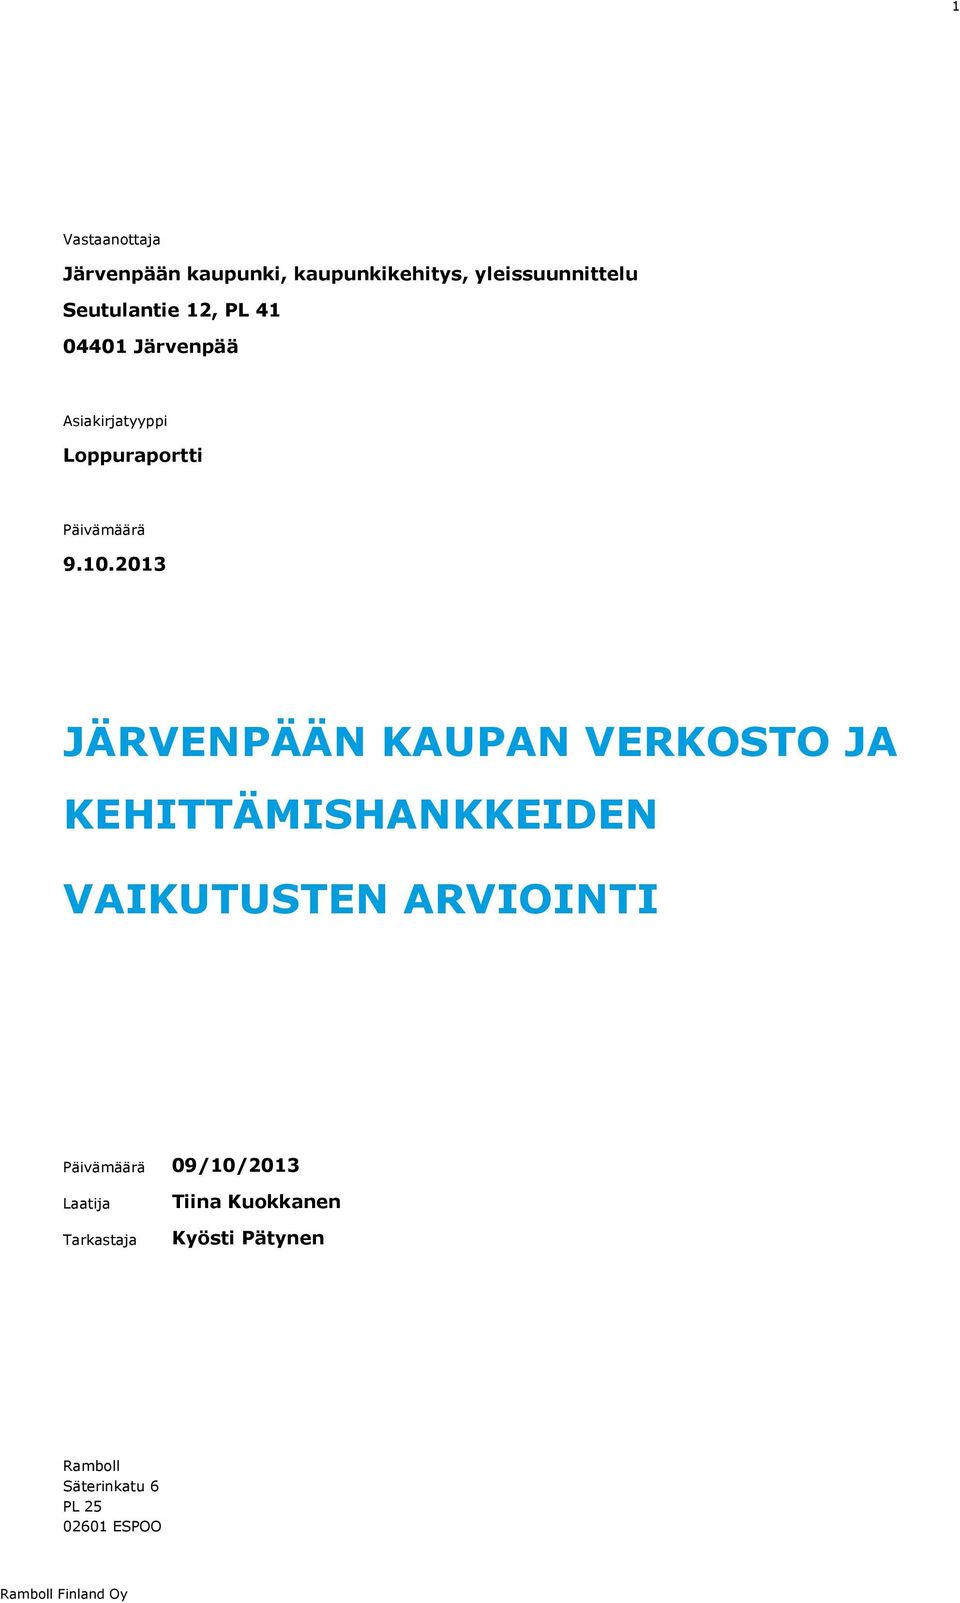 2013 JÄRVENPÄÄN KAUPAN VERKOSTO JA KEHITTÄMISHANKKEIDEN VAIKUTUSTEN ARVIOINTI